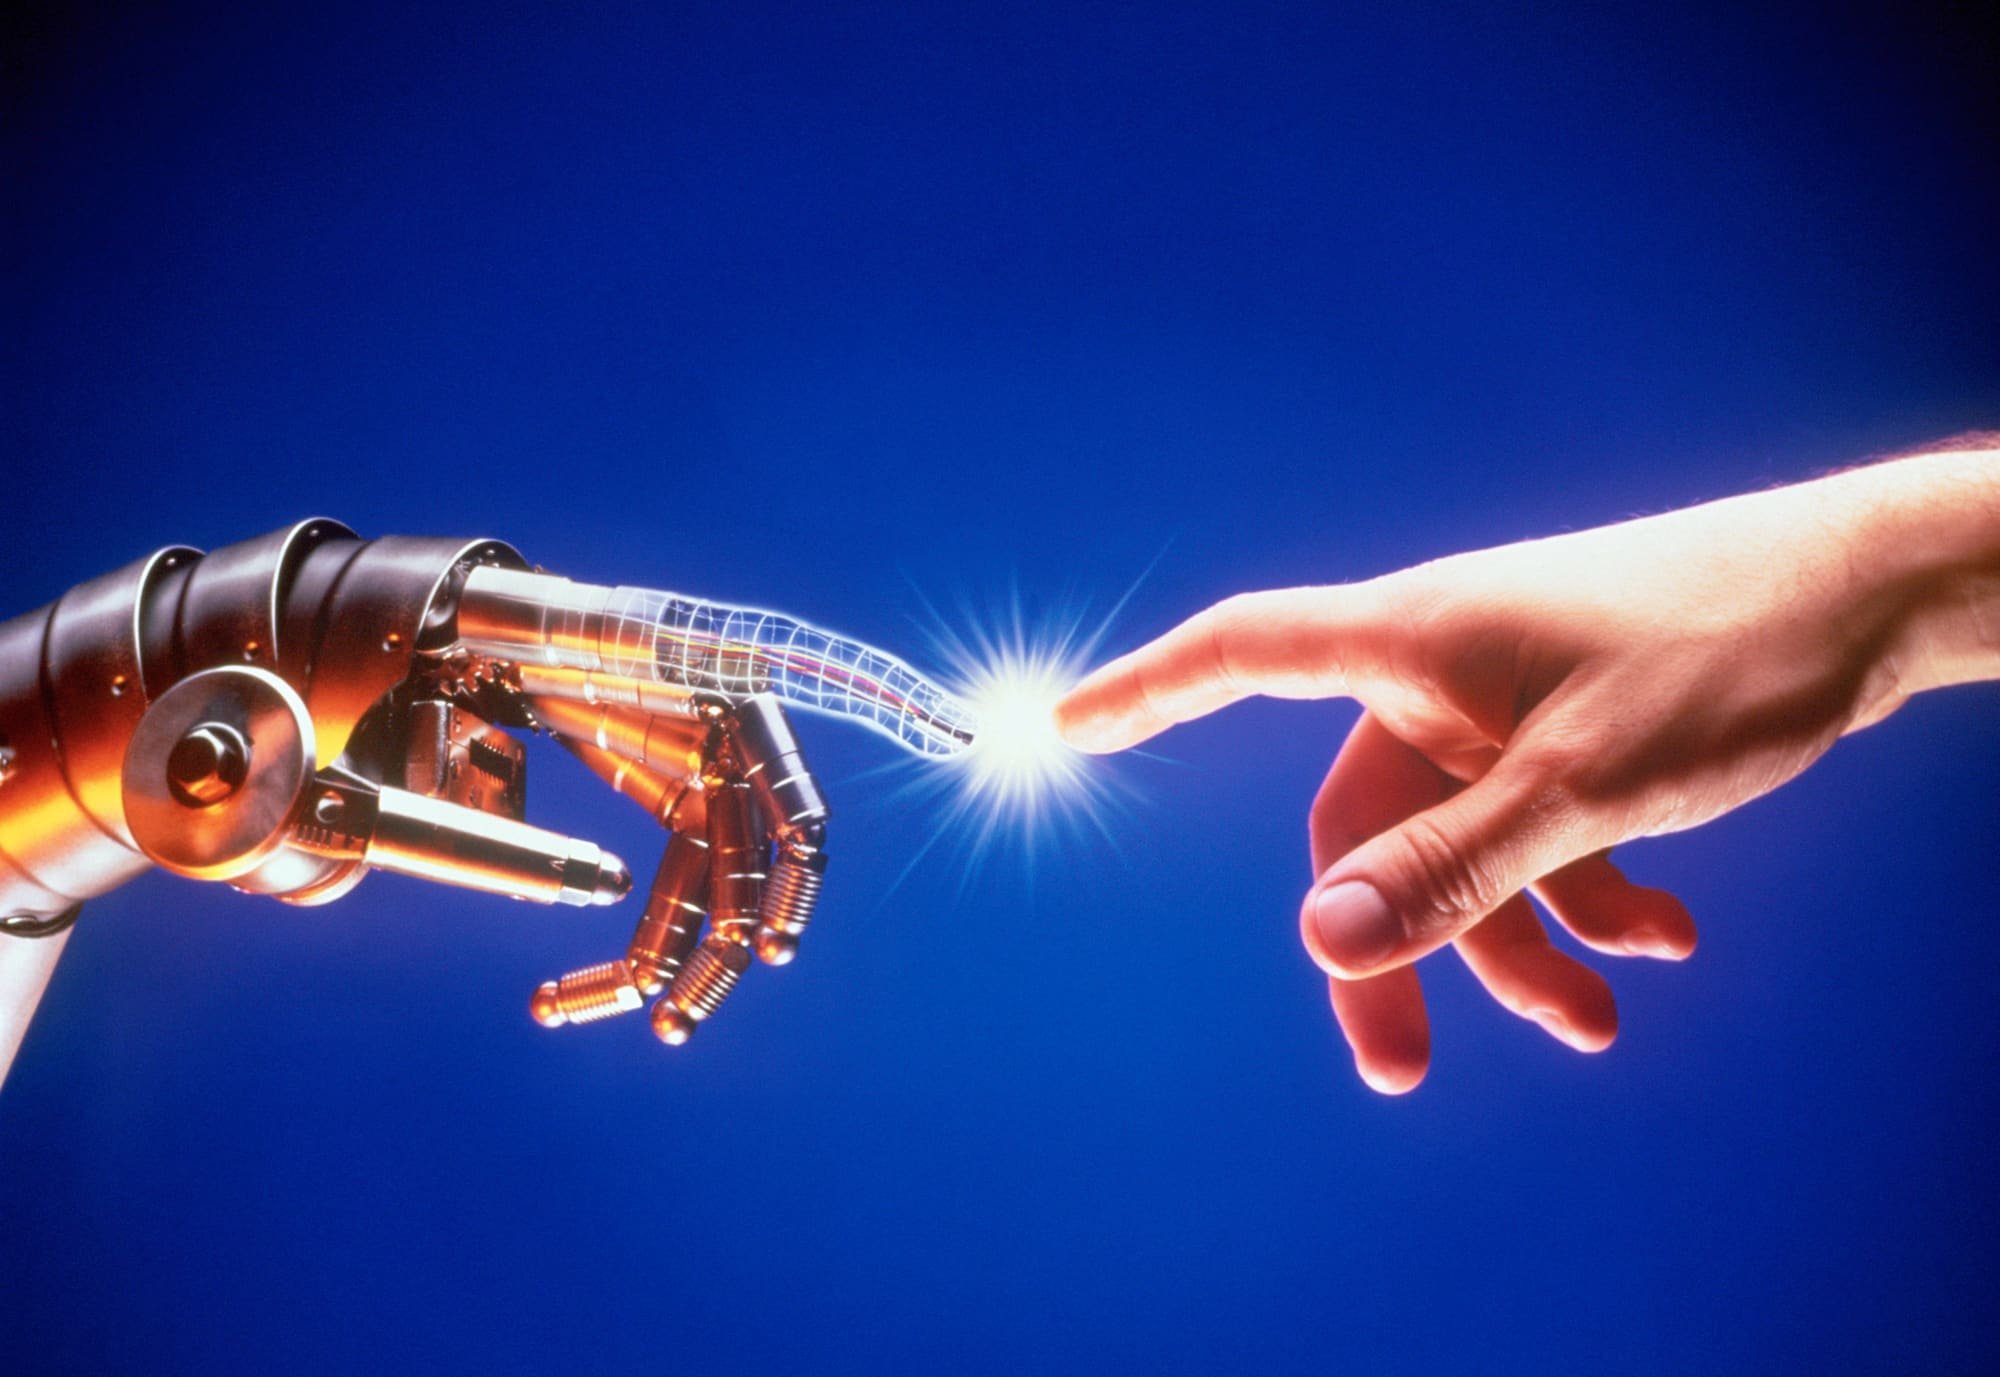 Научно техническое развитие. Технологический прорыв. Прорыв в технологиях. Торговые роботы на фондовом рынке. Робот фондовый рынок.